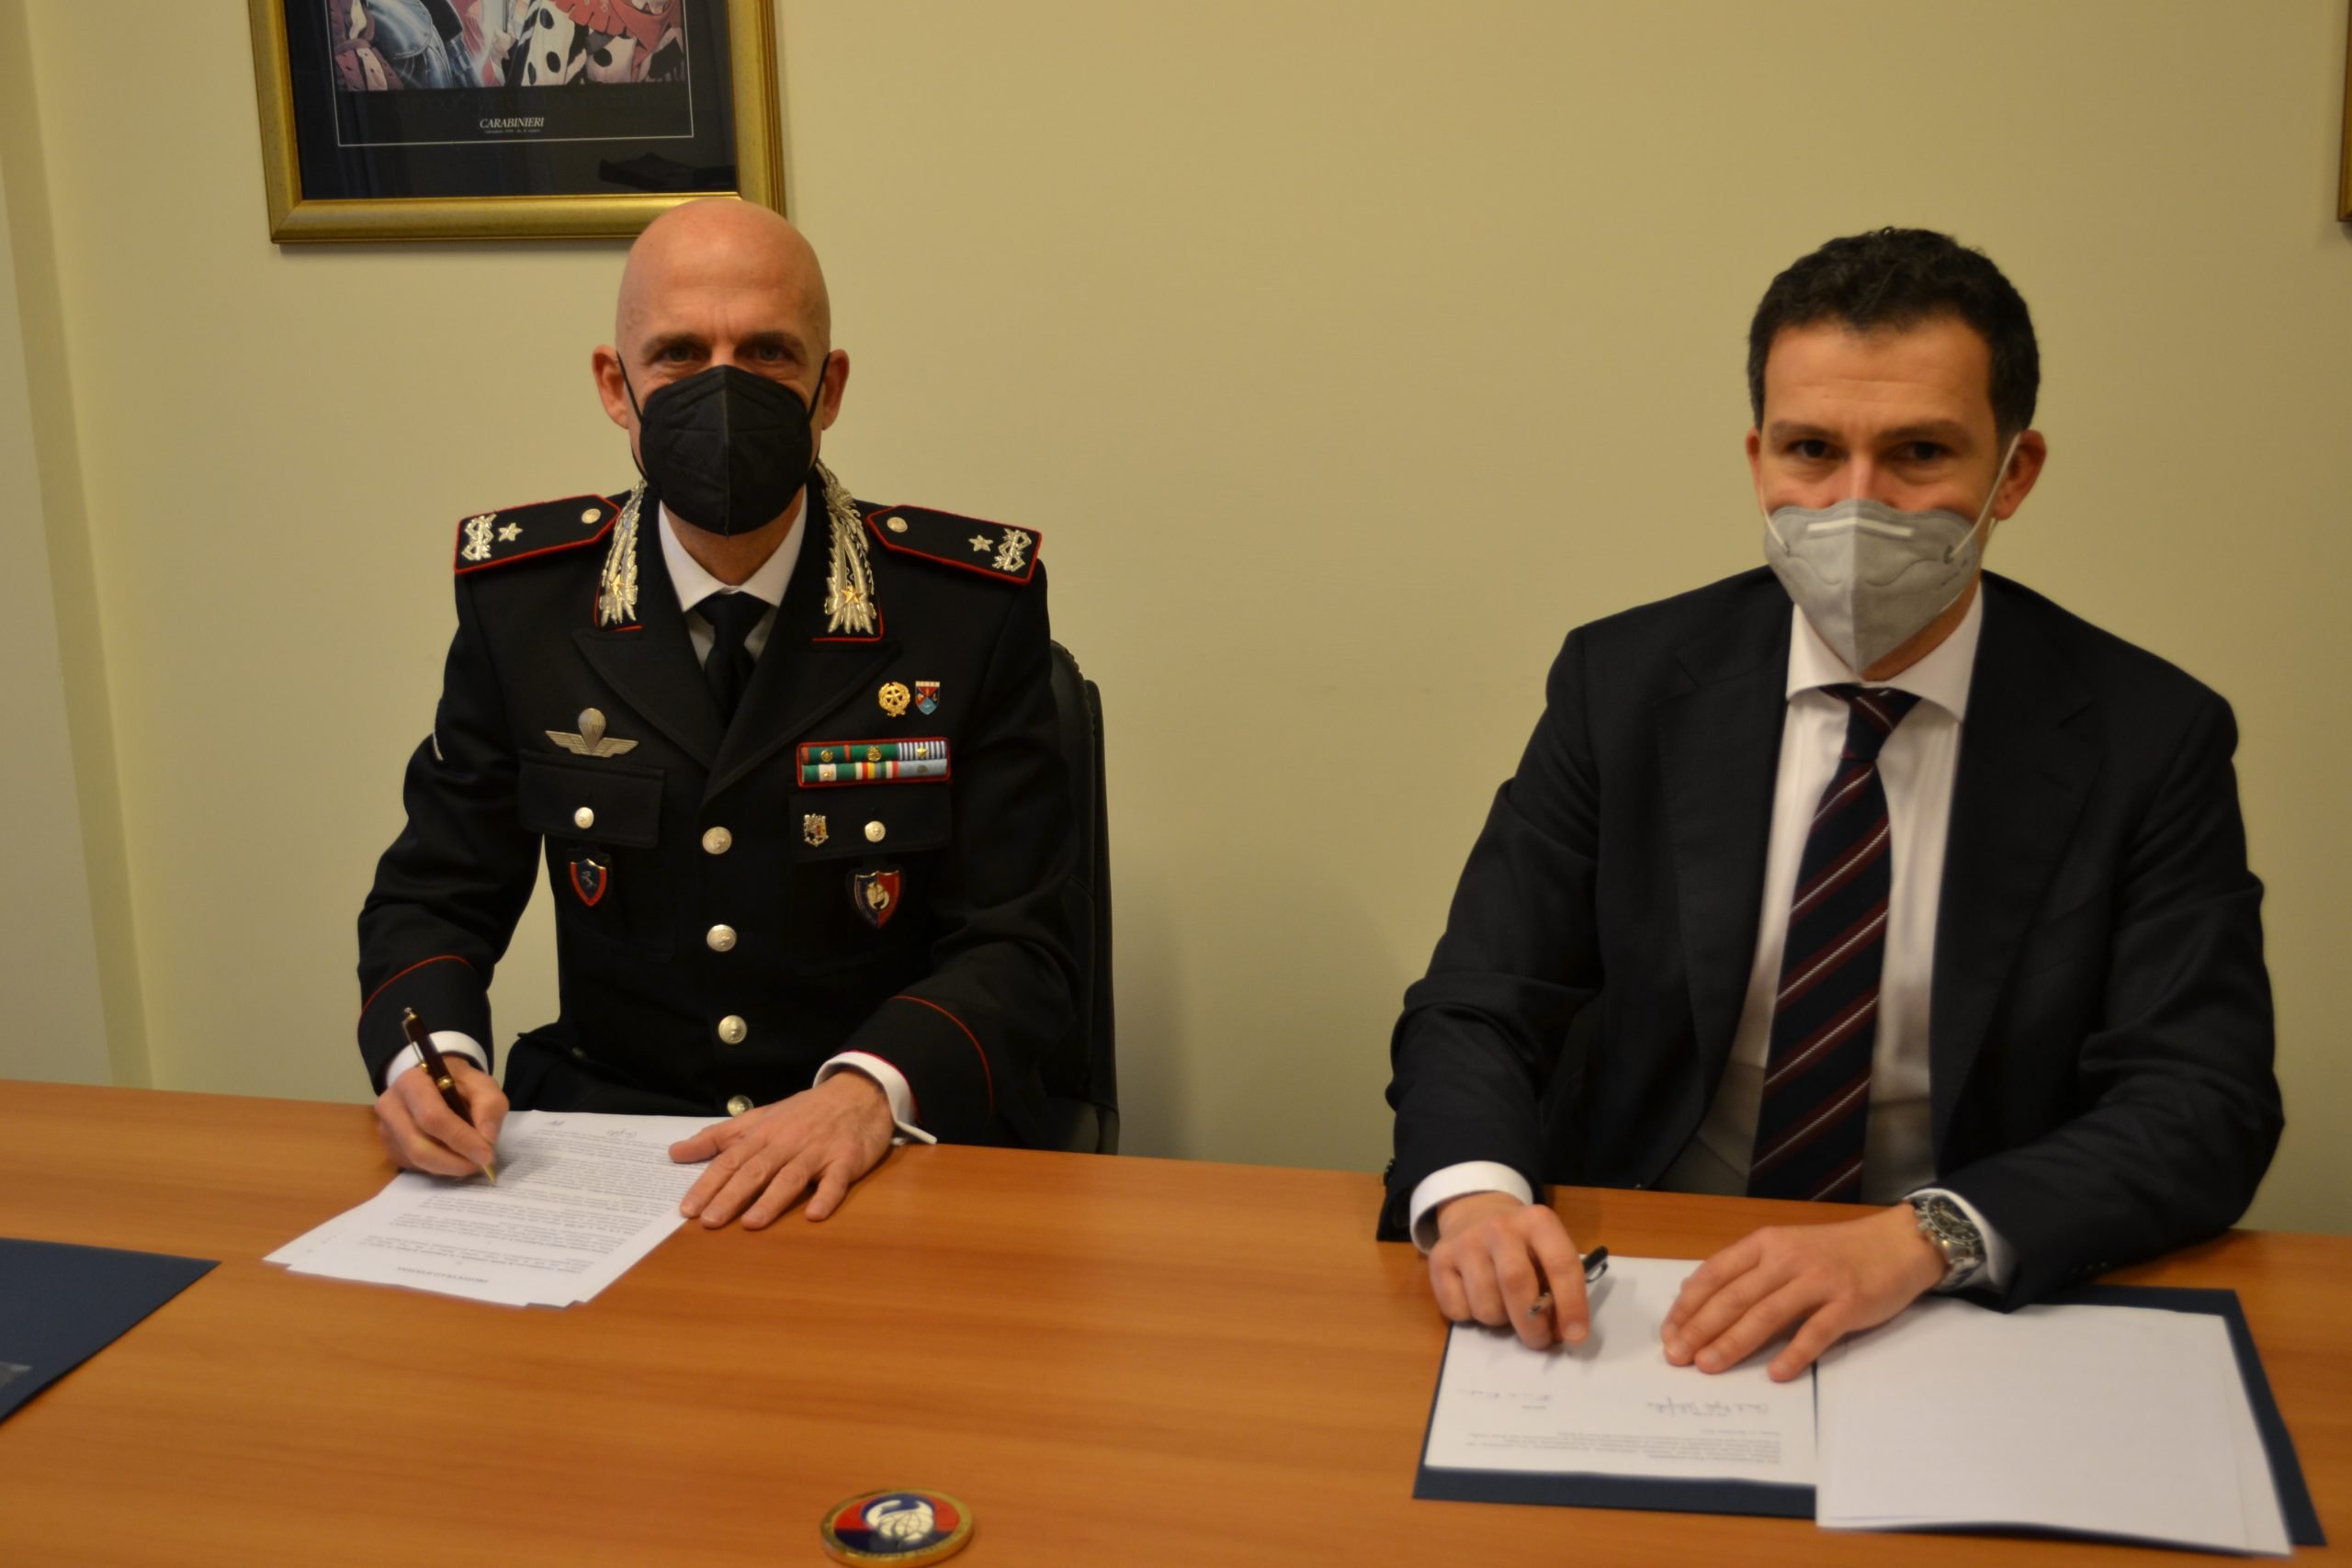 Accordo Carabinieri-Sogin amplia collaborazione nella gestione rifiuti radioattivi